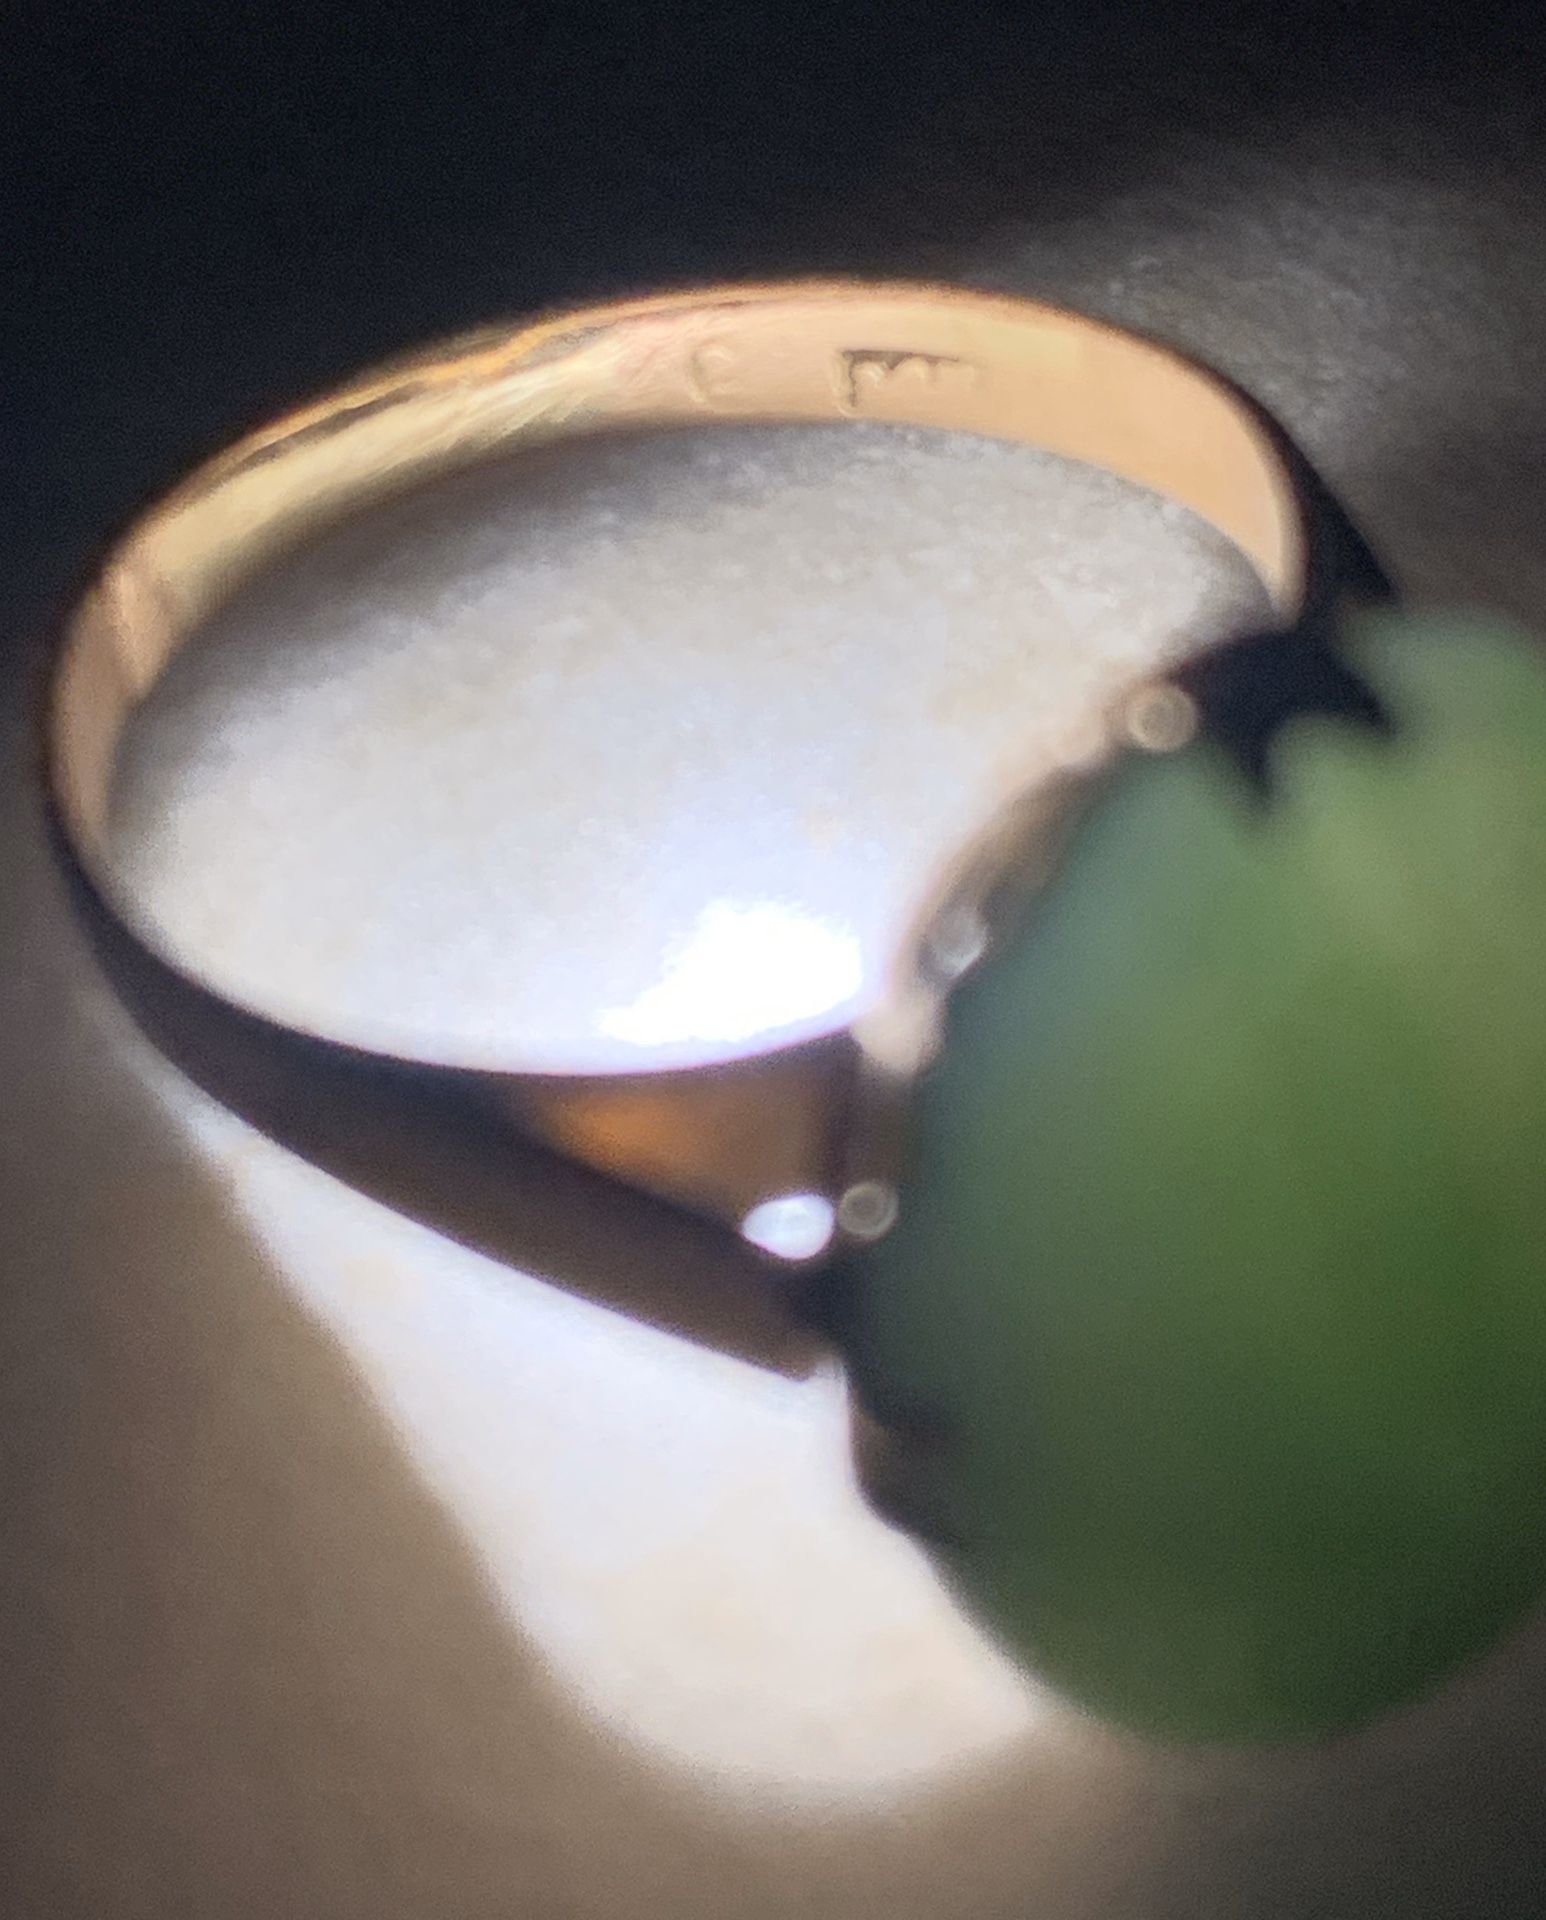 Antique Nephrite Jade Ring (for Repair) 14k LAST CHANCE PRICE